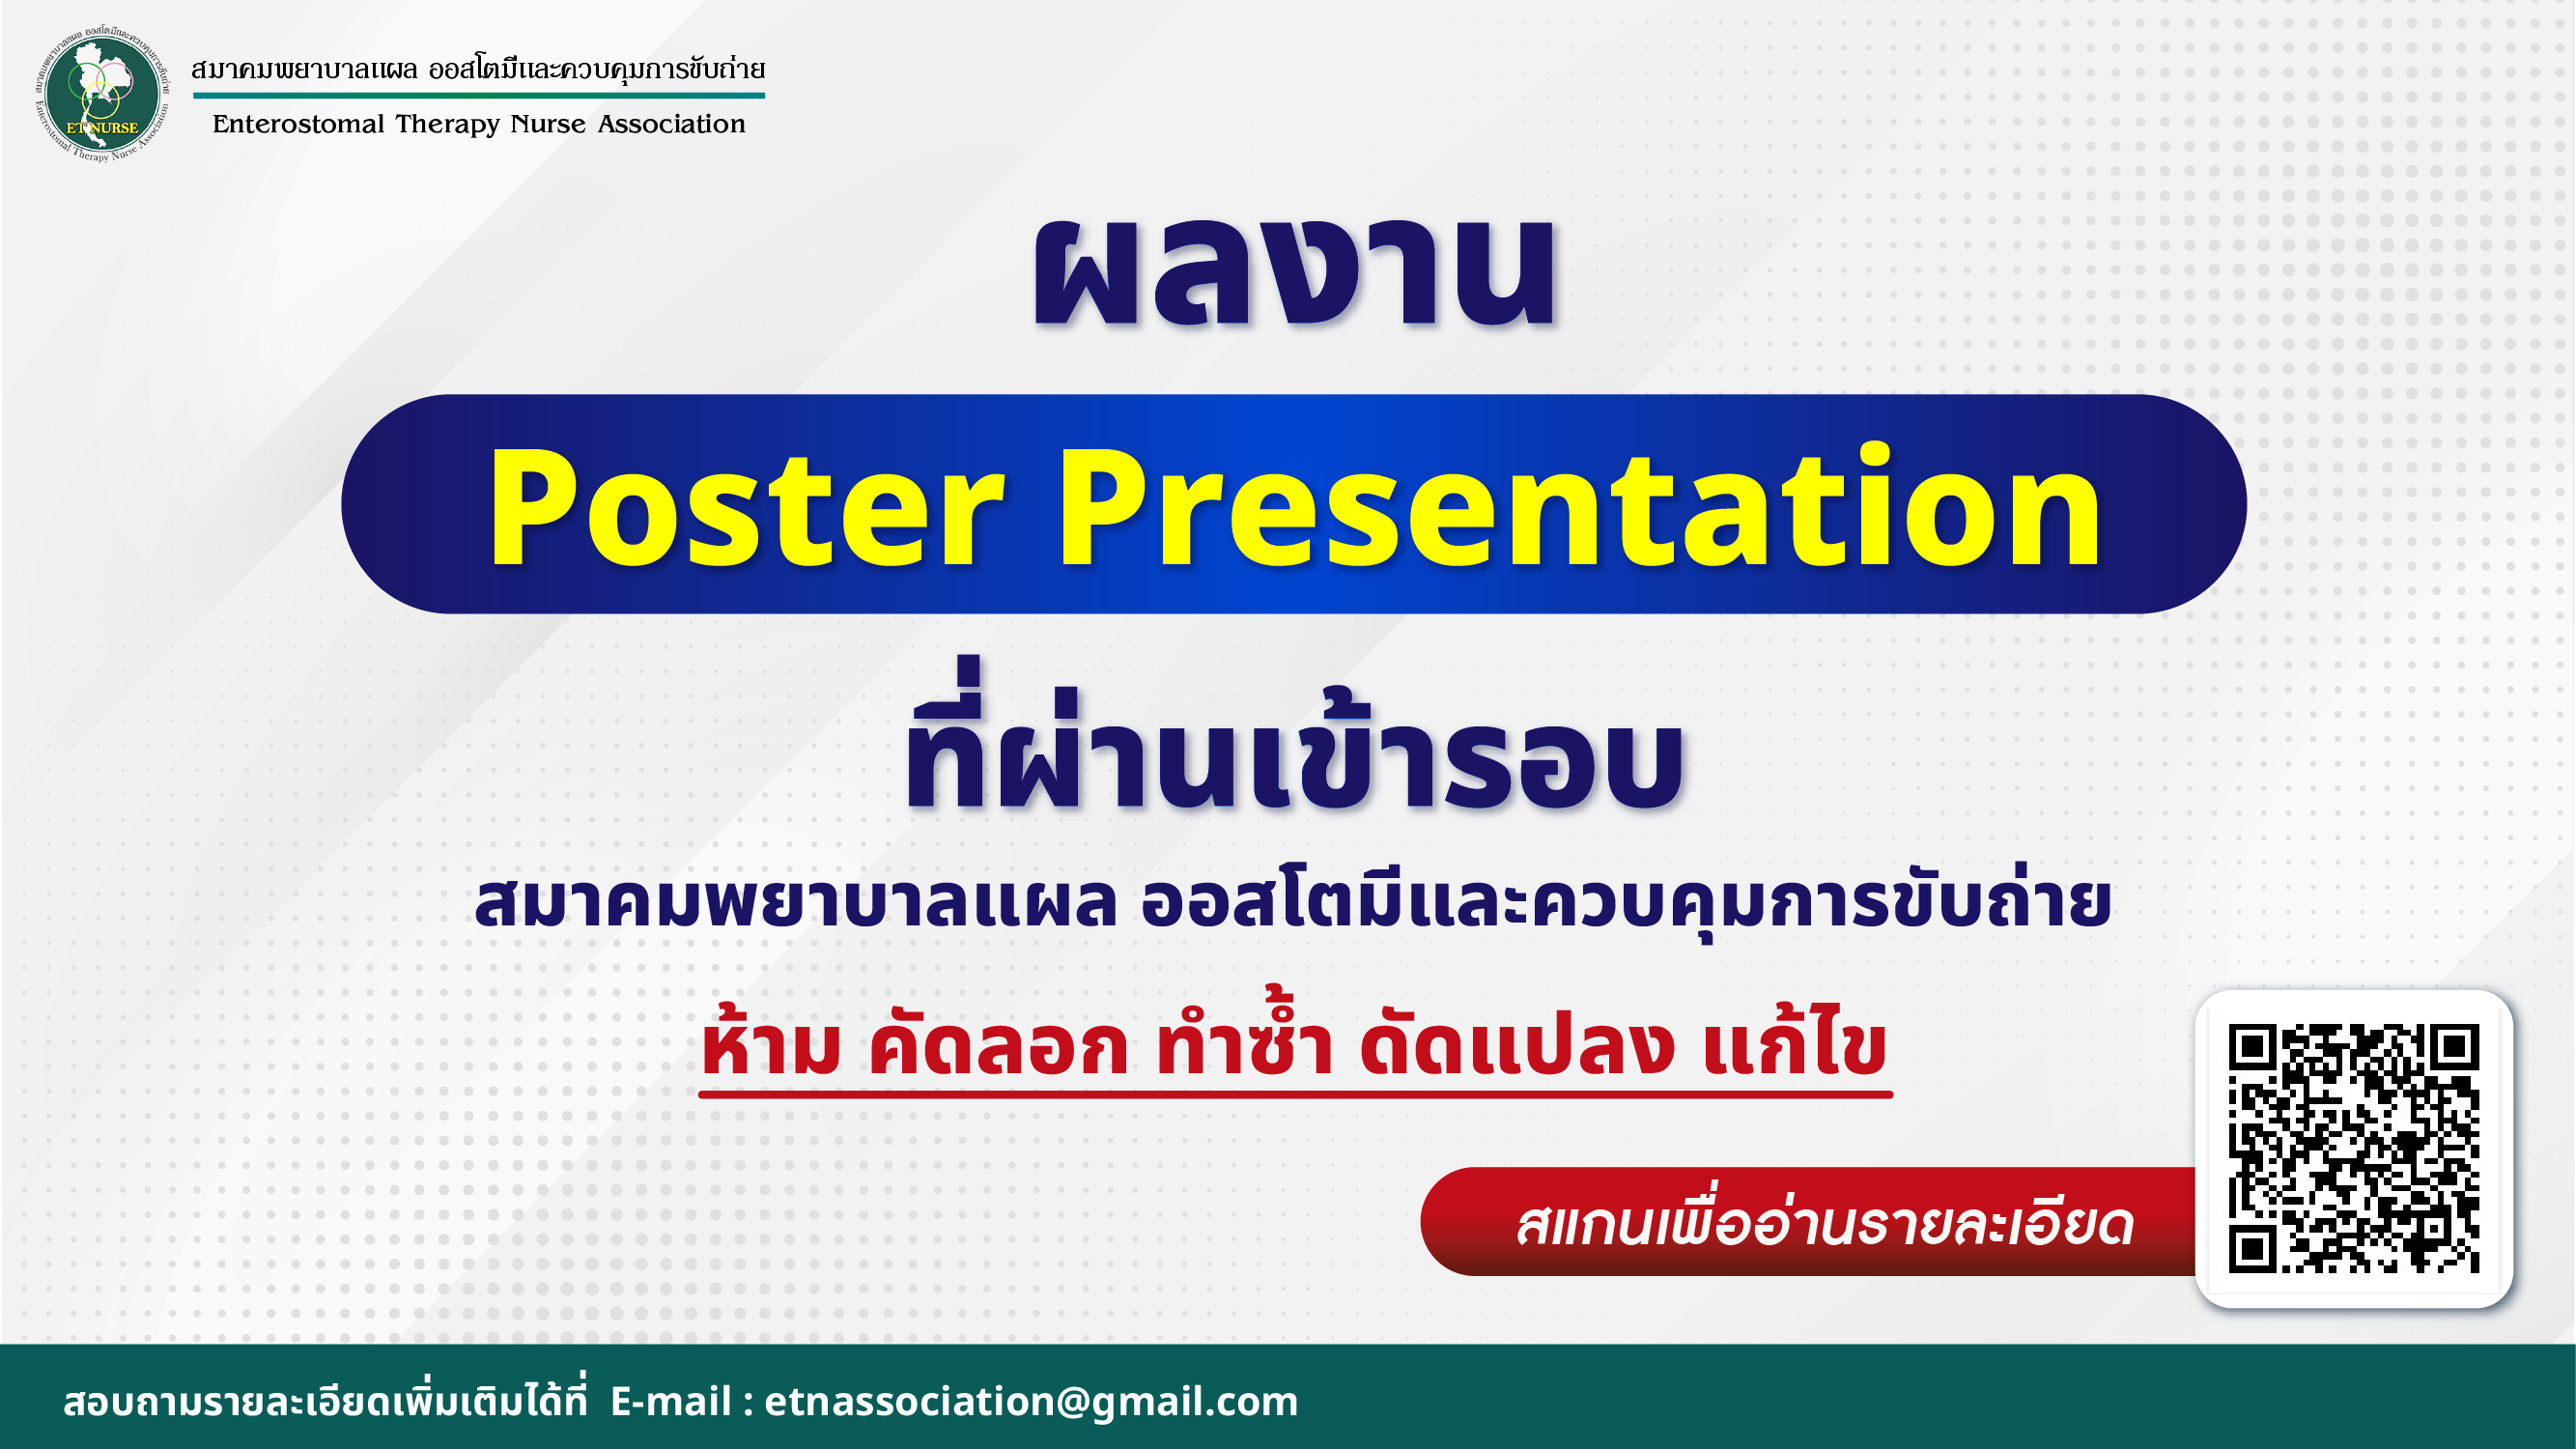 ผลงาน Poster Presentation ที่ผ่านเข้ารอบ สมาคมพยาบาลแผล ออสโตมีและควบคุมการขับถ่าย